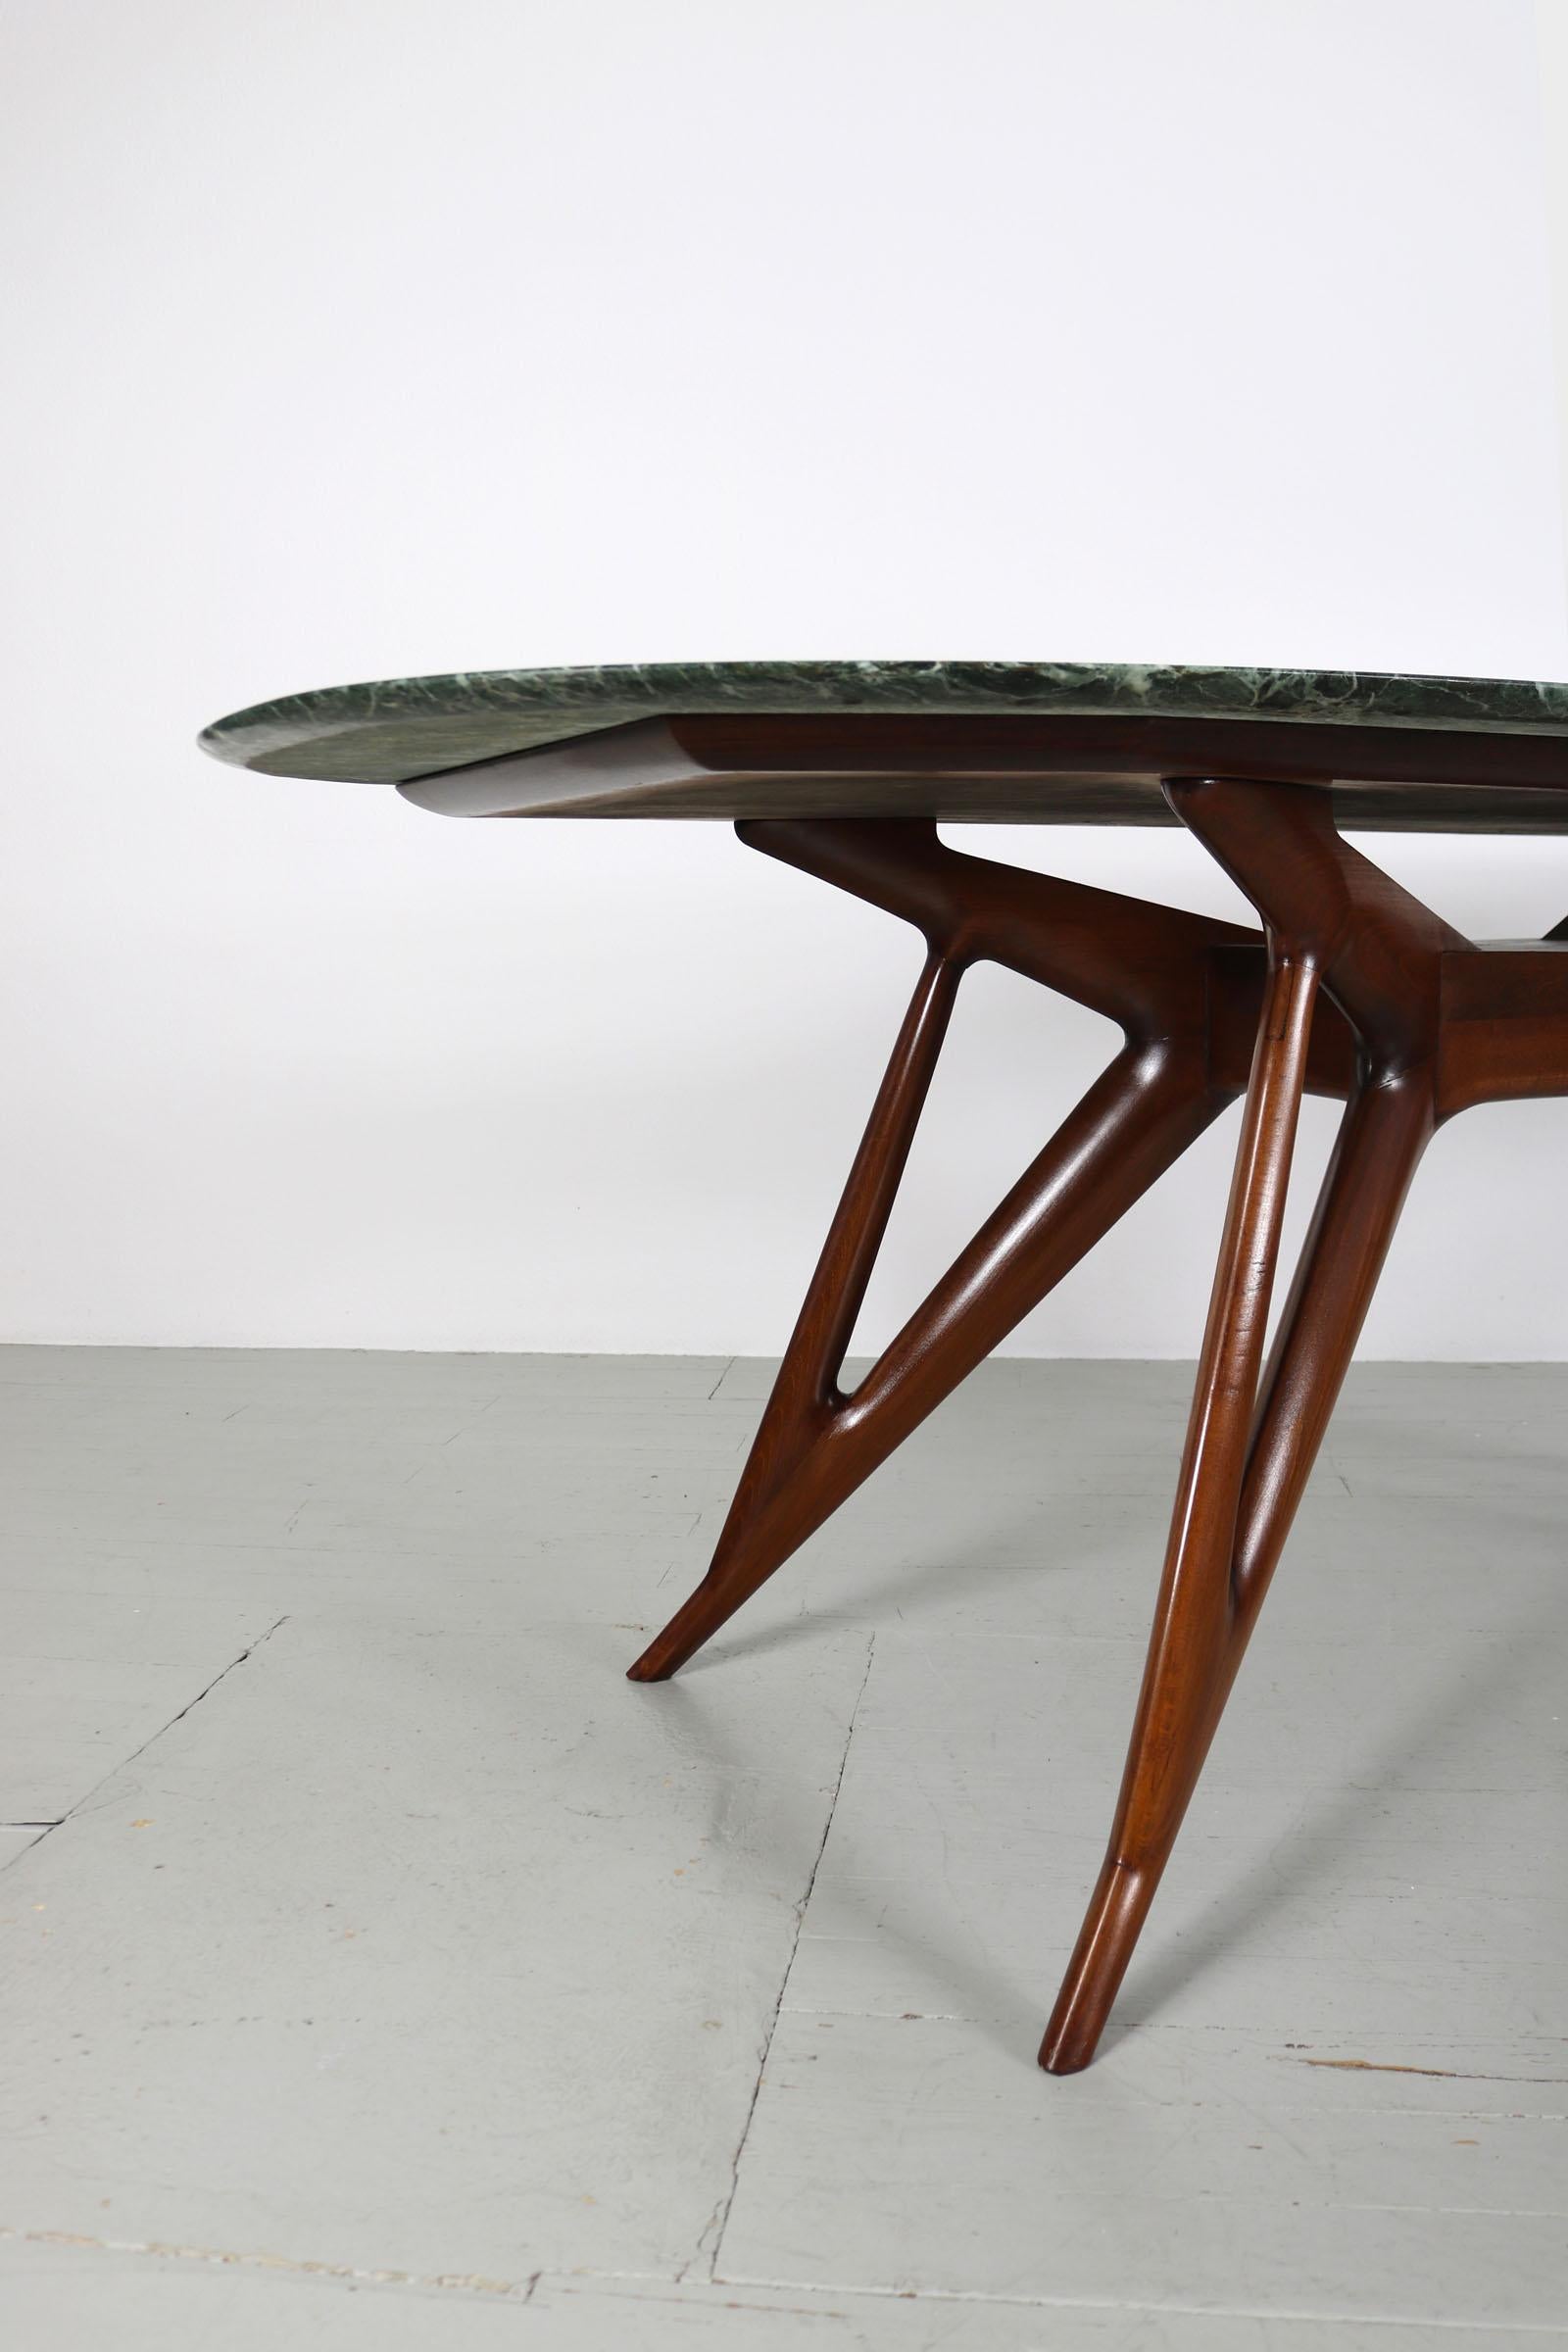 Dieser italienische Esstisch wurde in den 1950er Jahren entworfen. Das extravagante Tischgestell ist aus gebeiztem, massivem Buchenholz gefertigt, als Material für die Tischplatte wurde Alpi Verde-Marmor verwendet. Wie die meisten italienischen